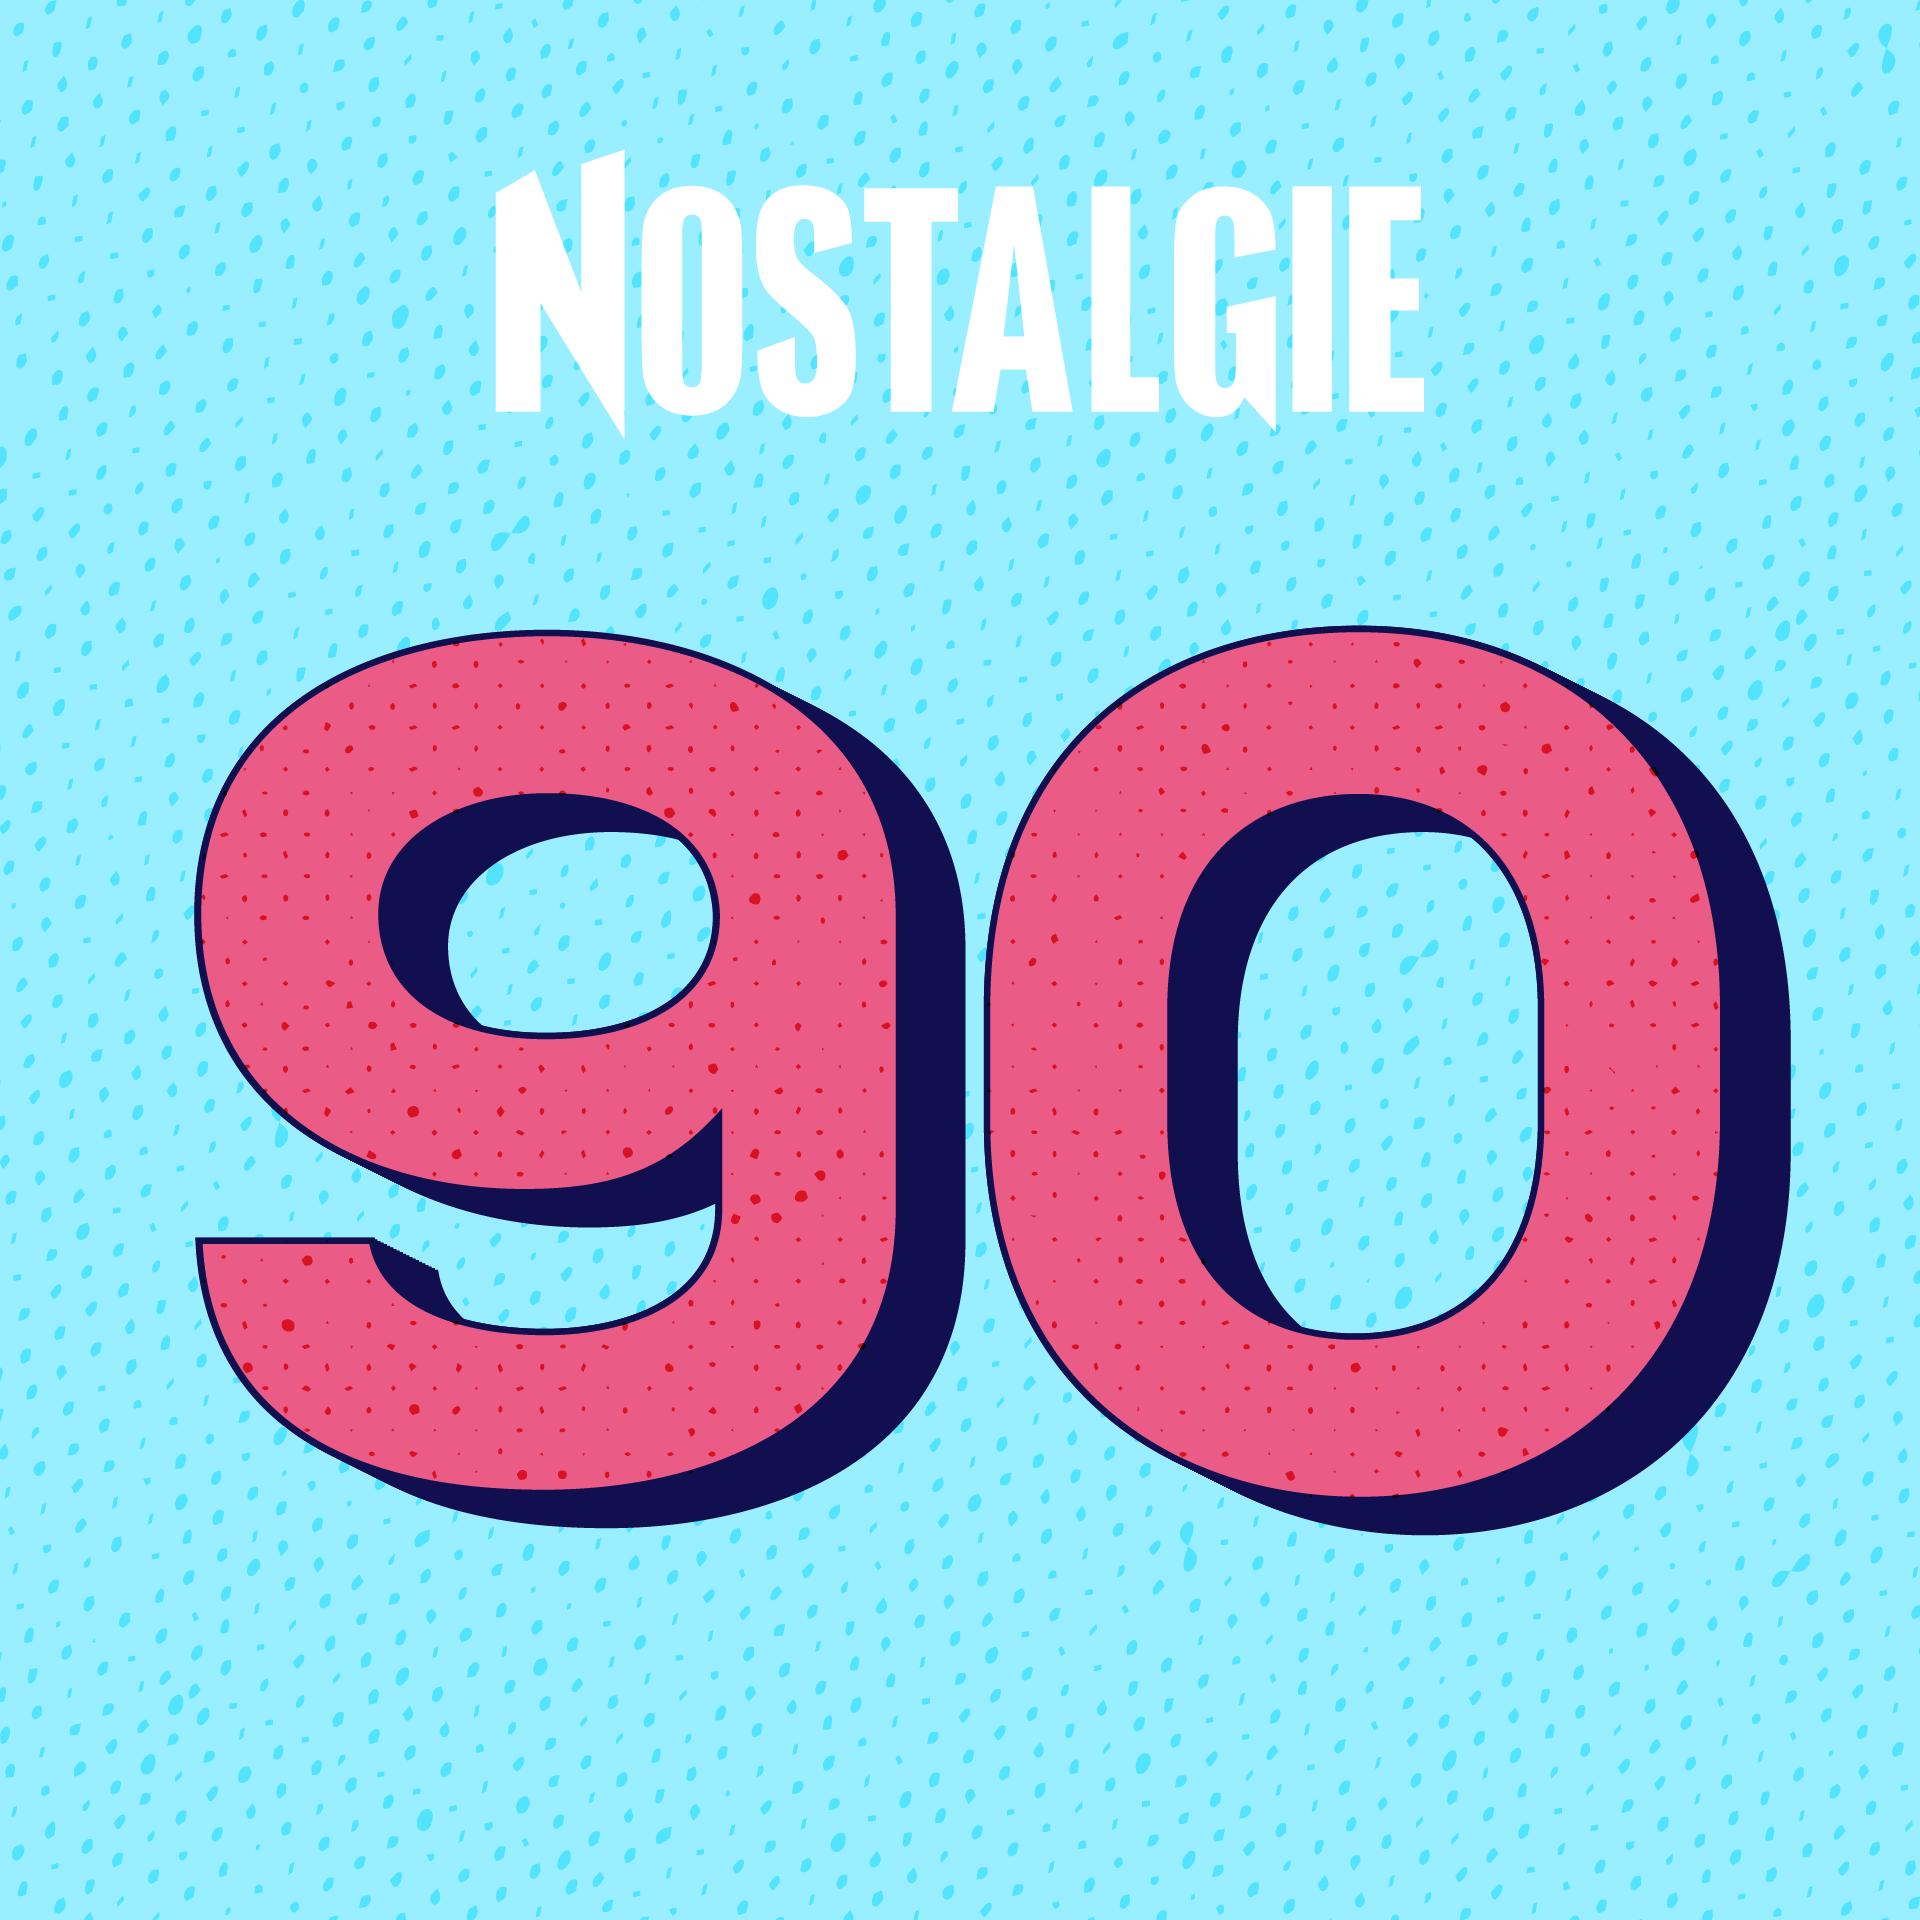 webradio nostalgie 90